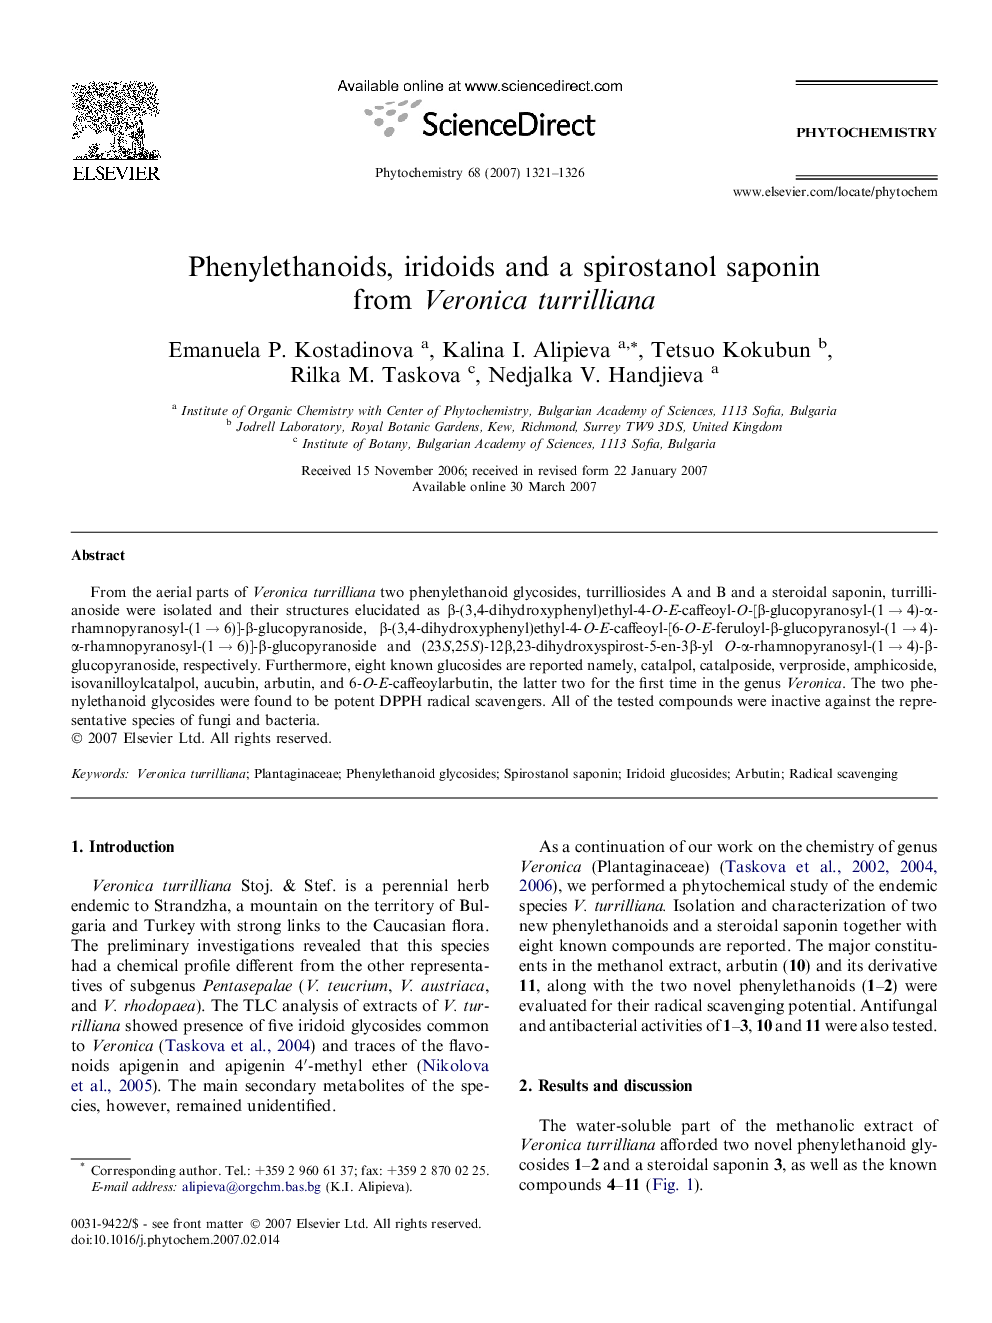 Phenylethanoids, iridoids and a spirostanol saponin from Veronica turrilliana